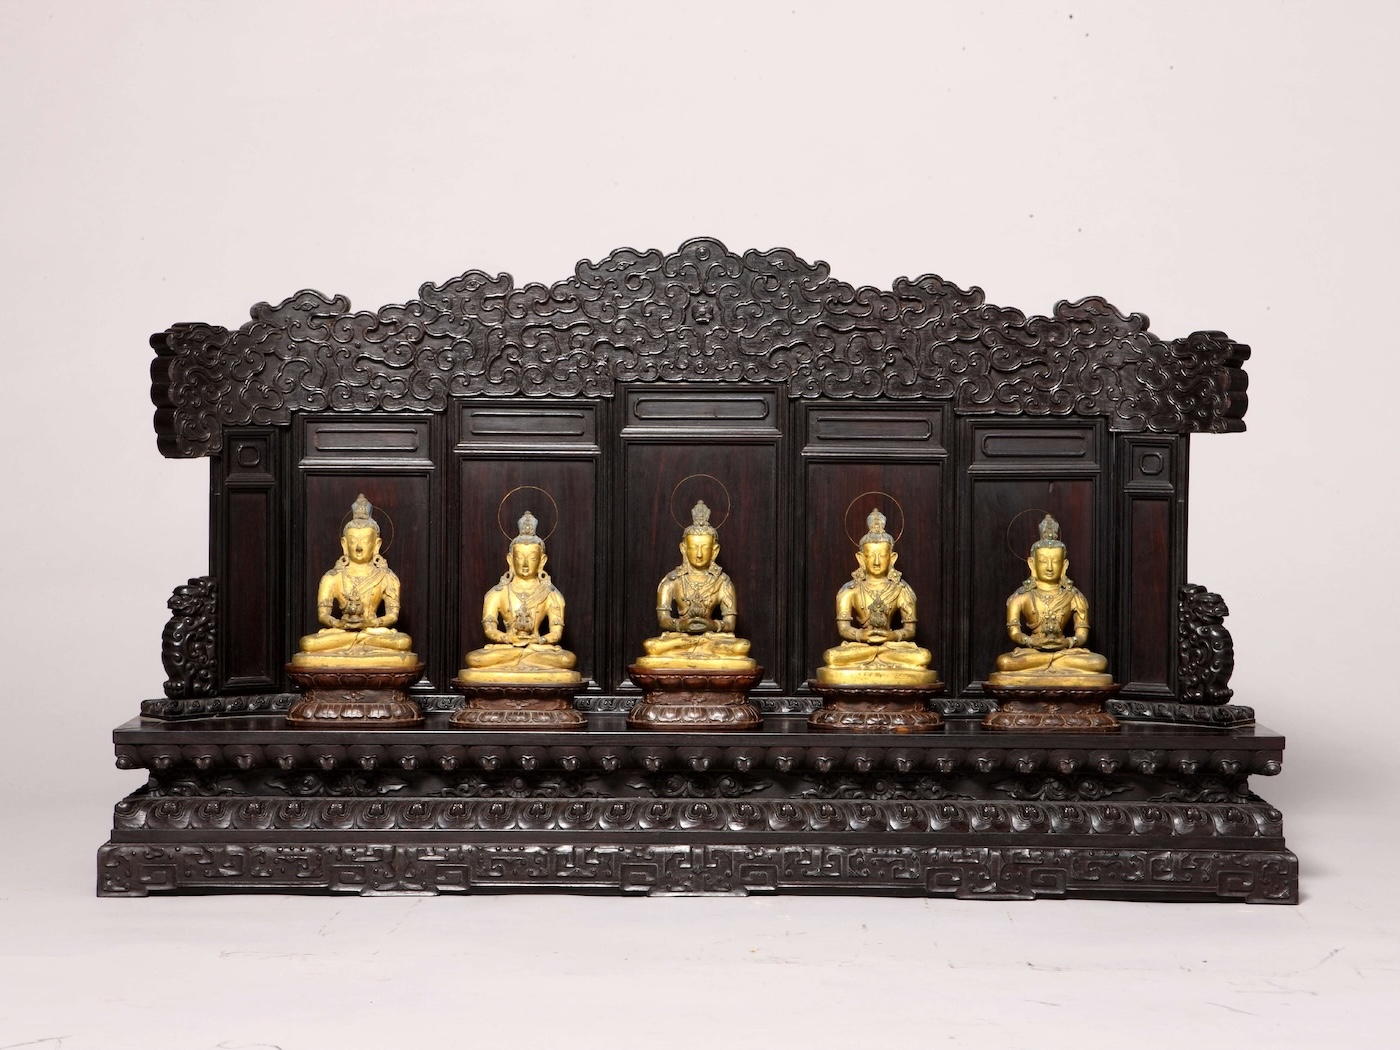 Amitāyus Buddha statues